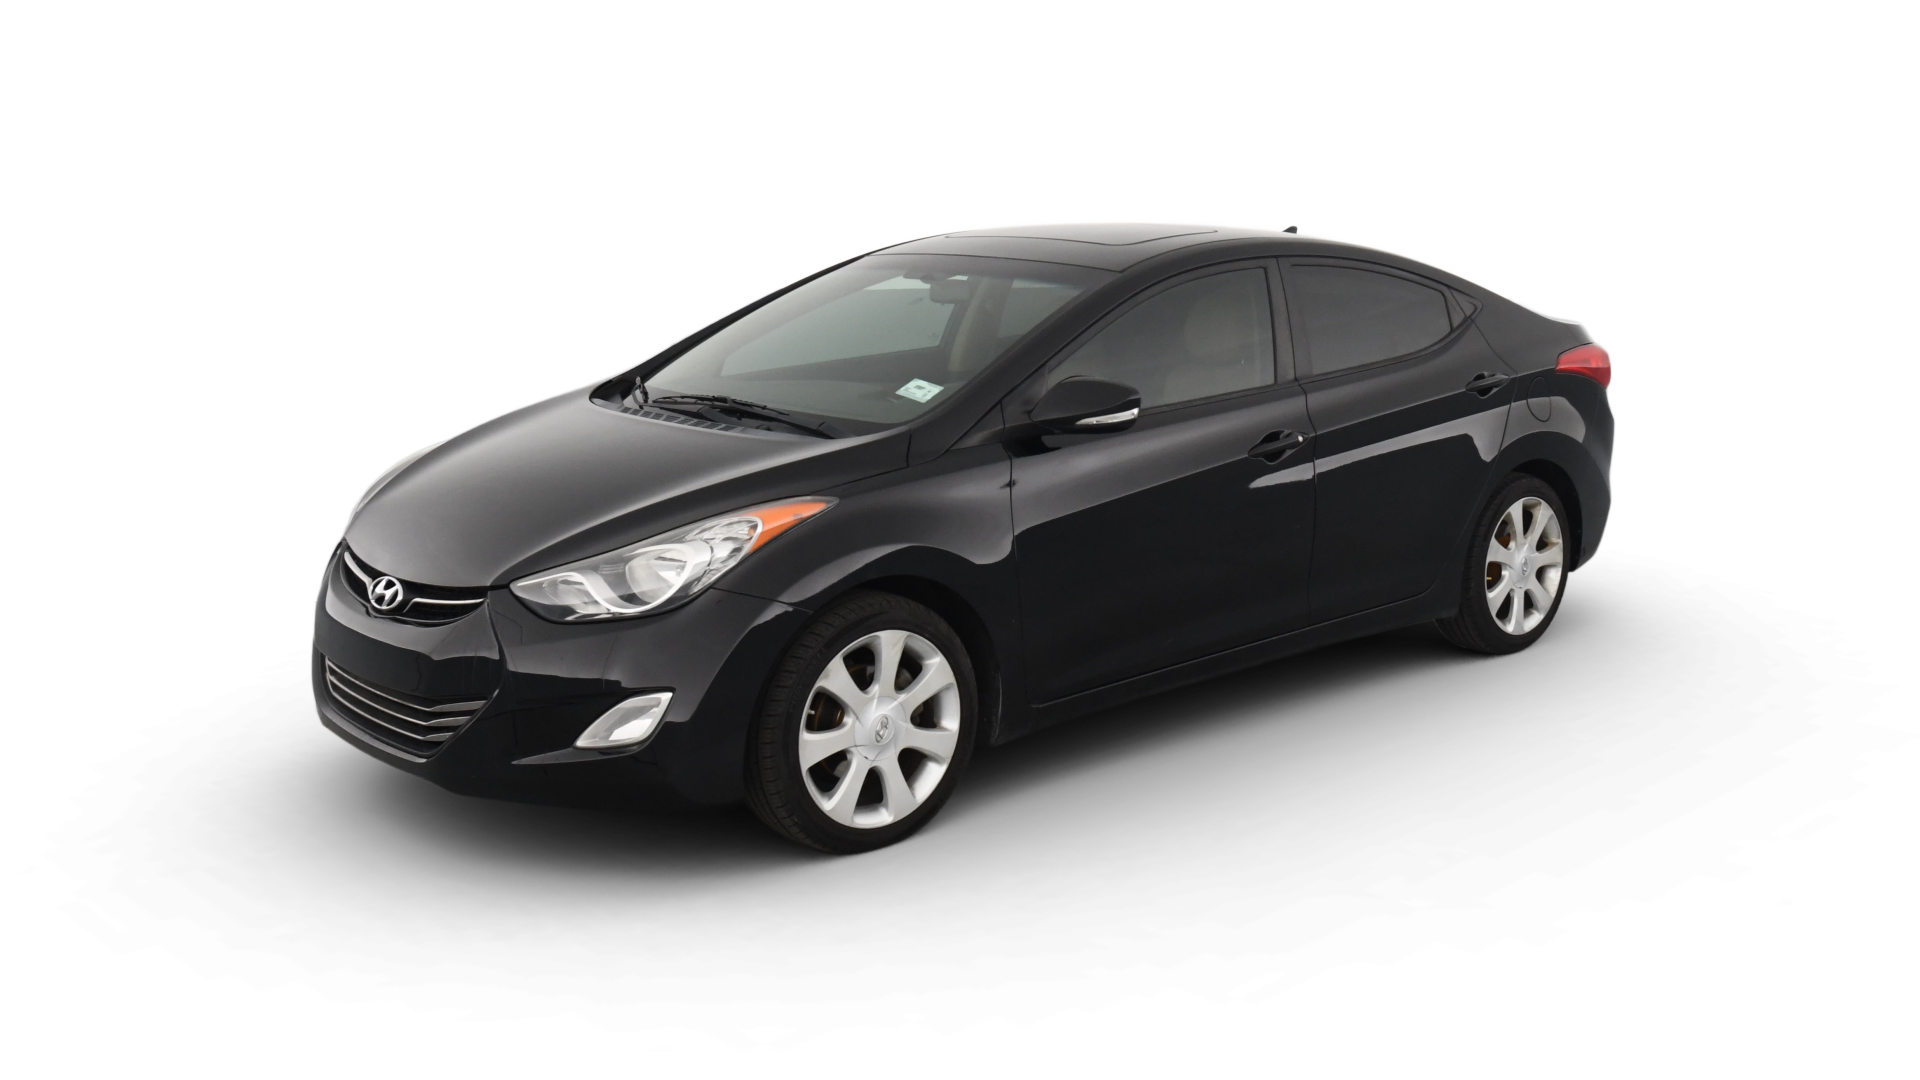 Hyundai Elantra model image.